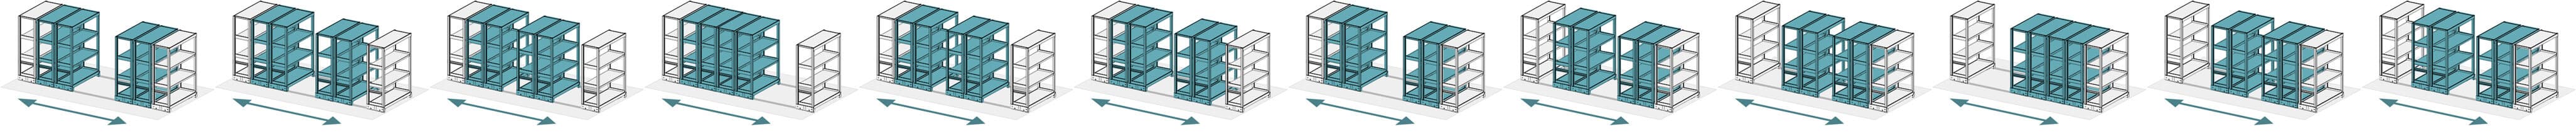 レール式移動棚の複式移動アニメーション